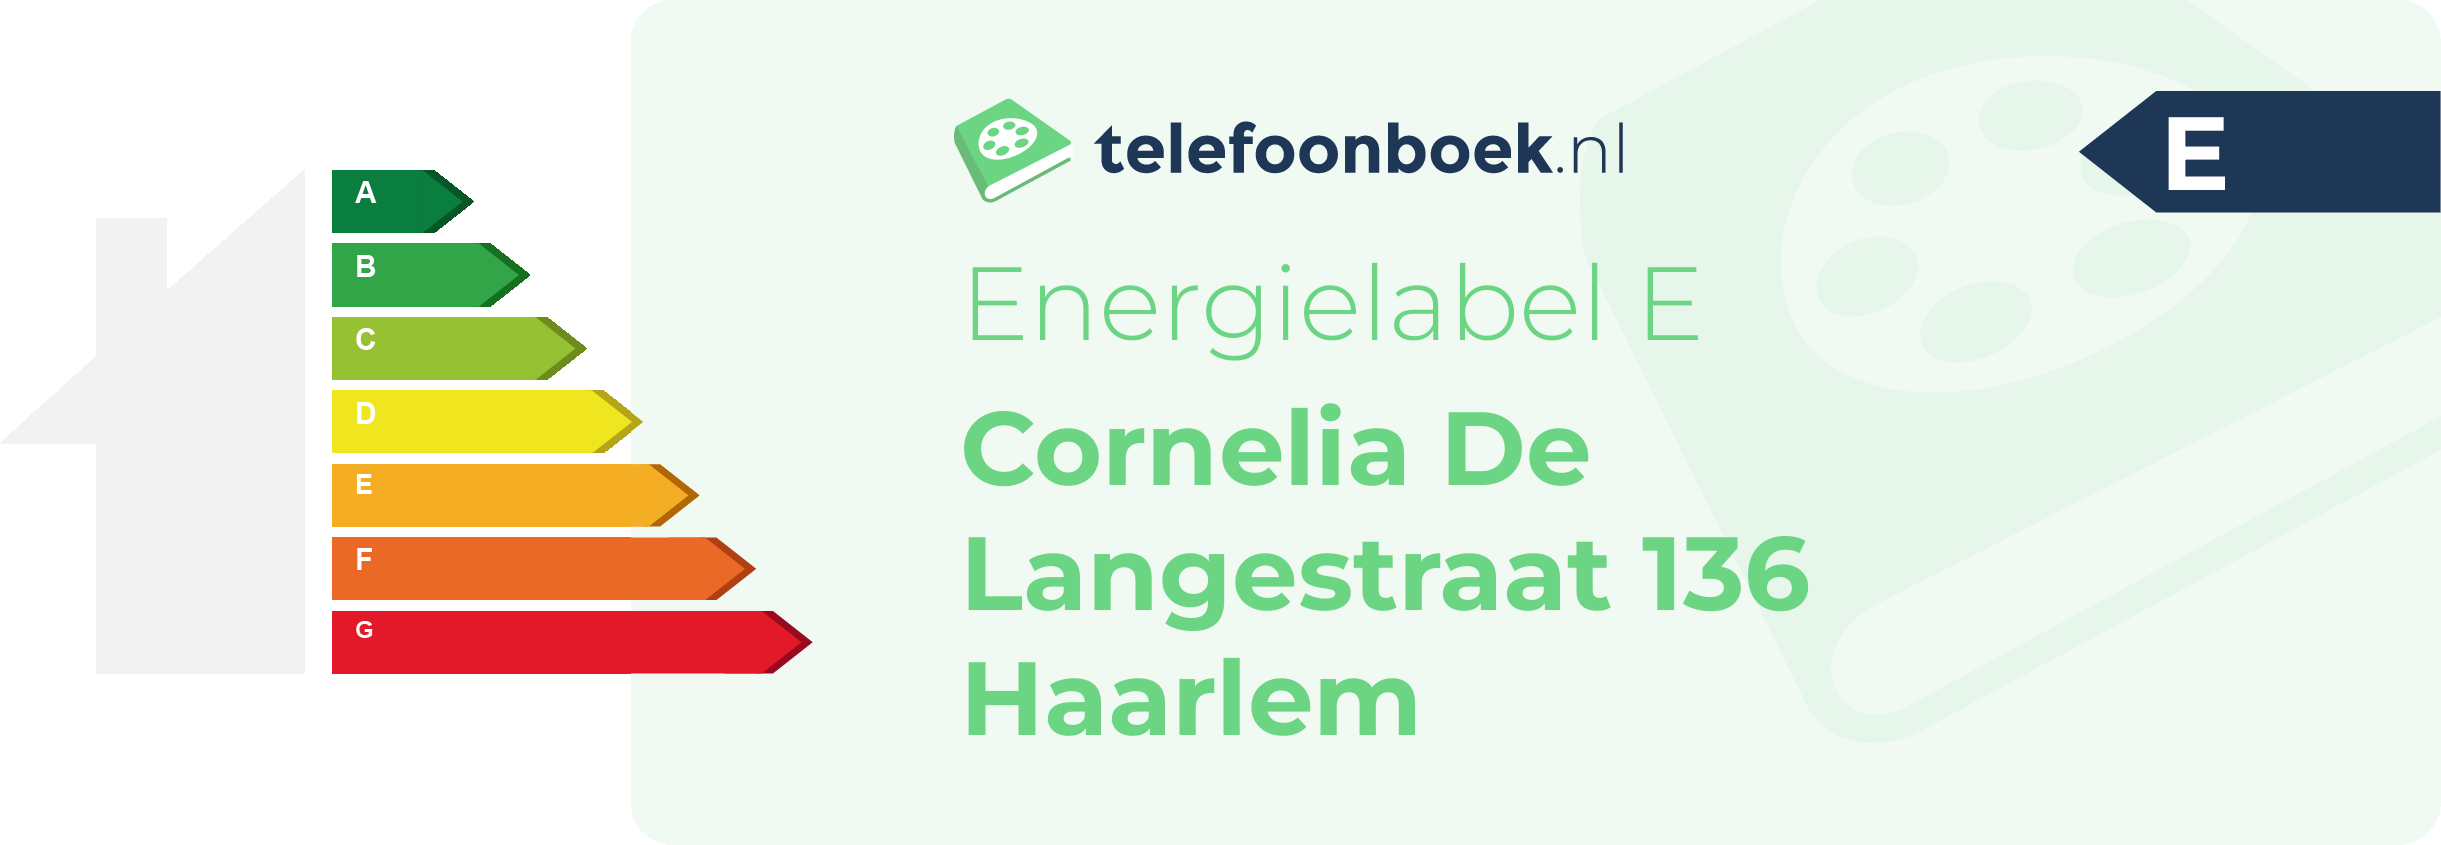 Energielabel Cornelia De Langestraat 136 Haarlem